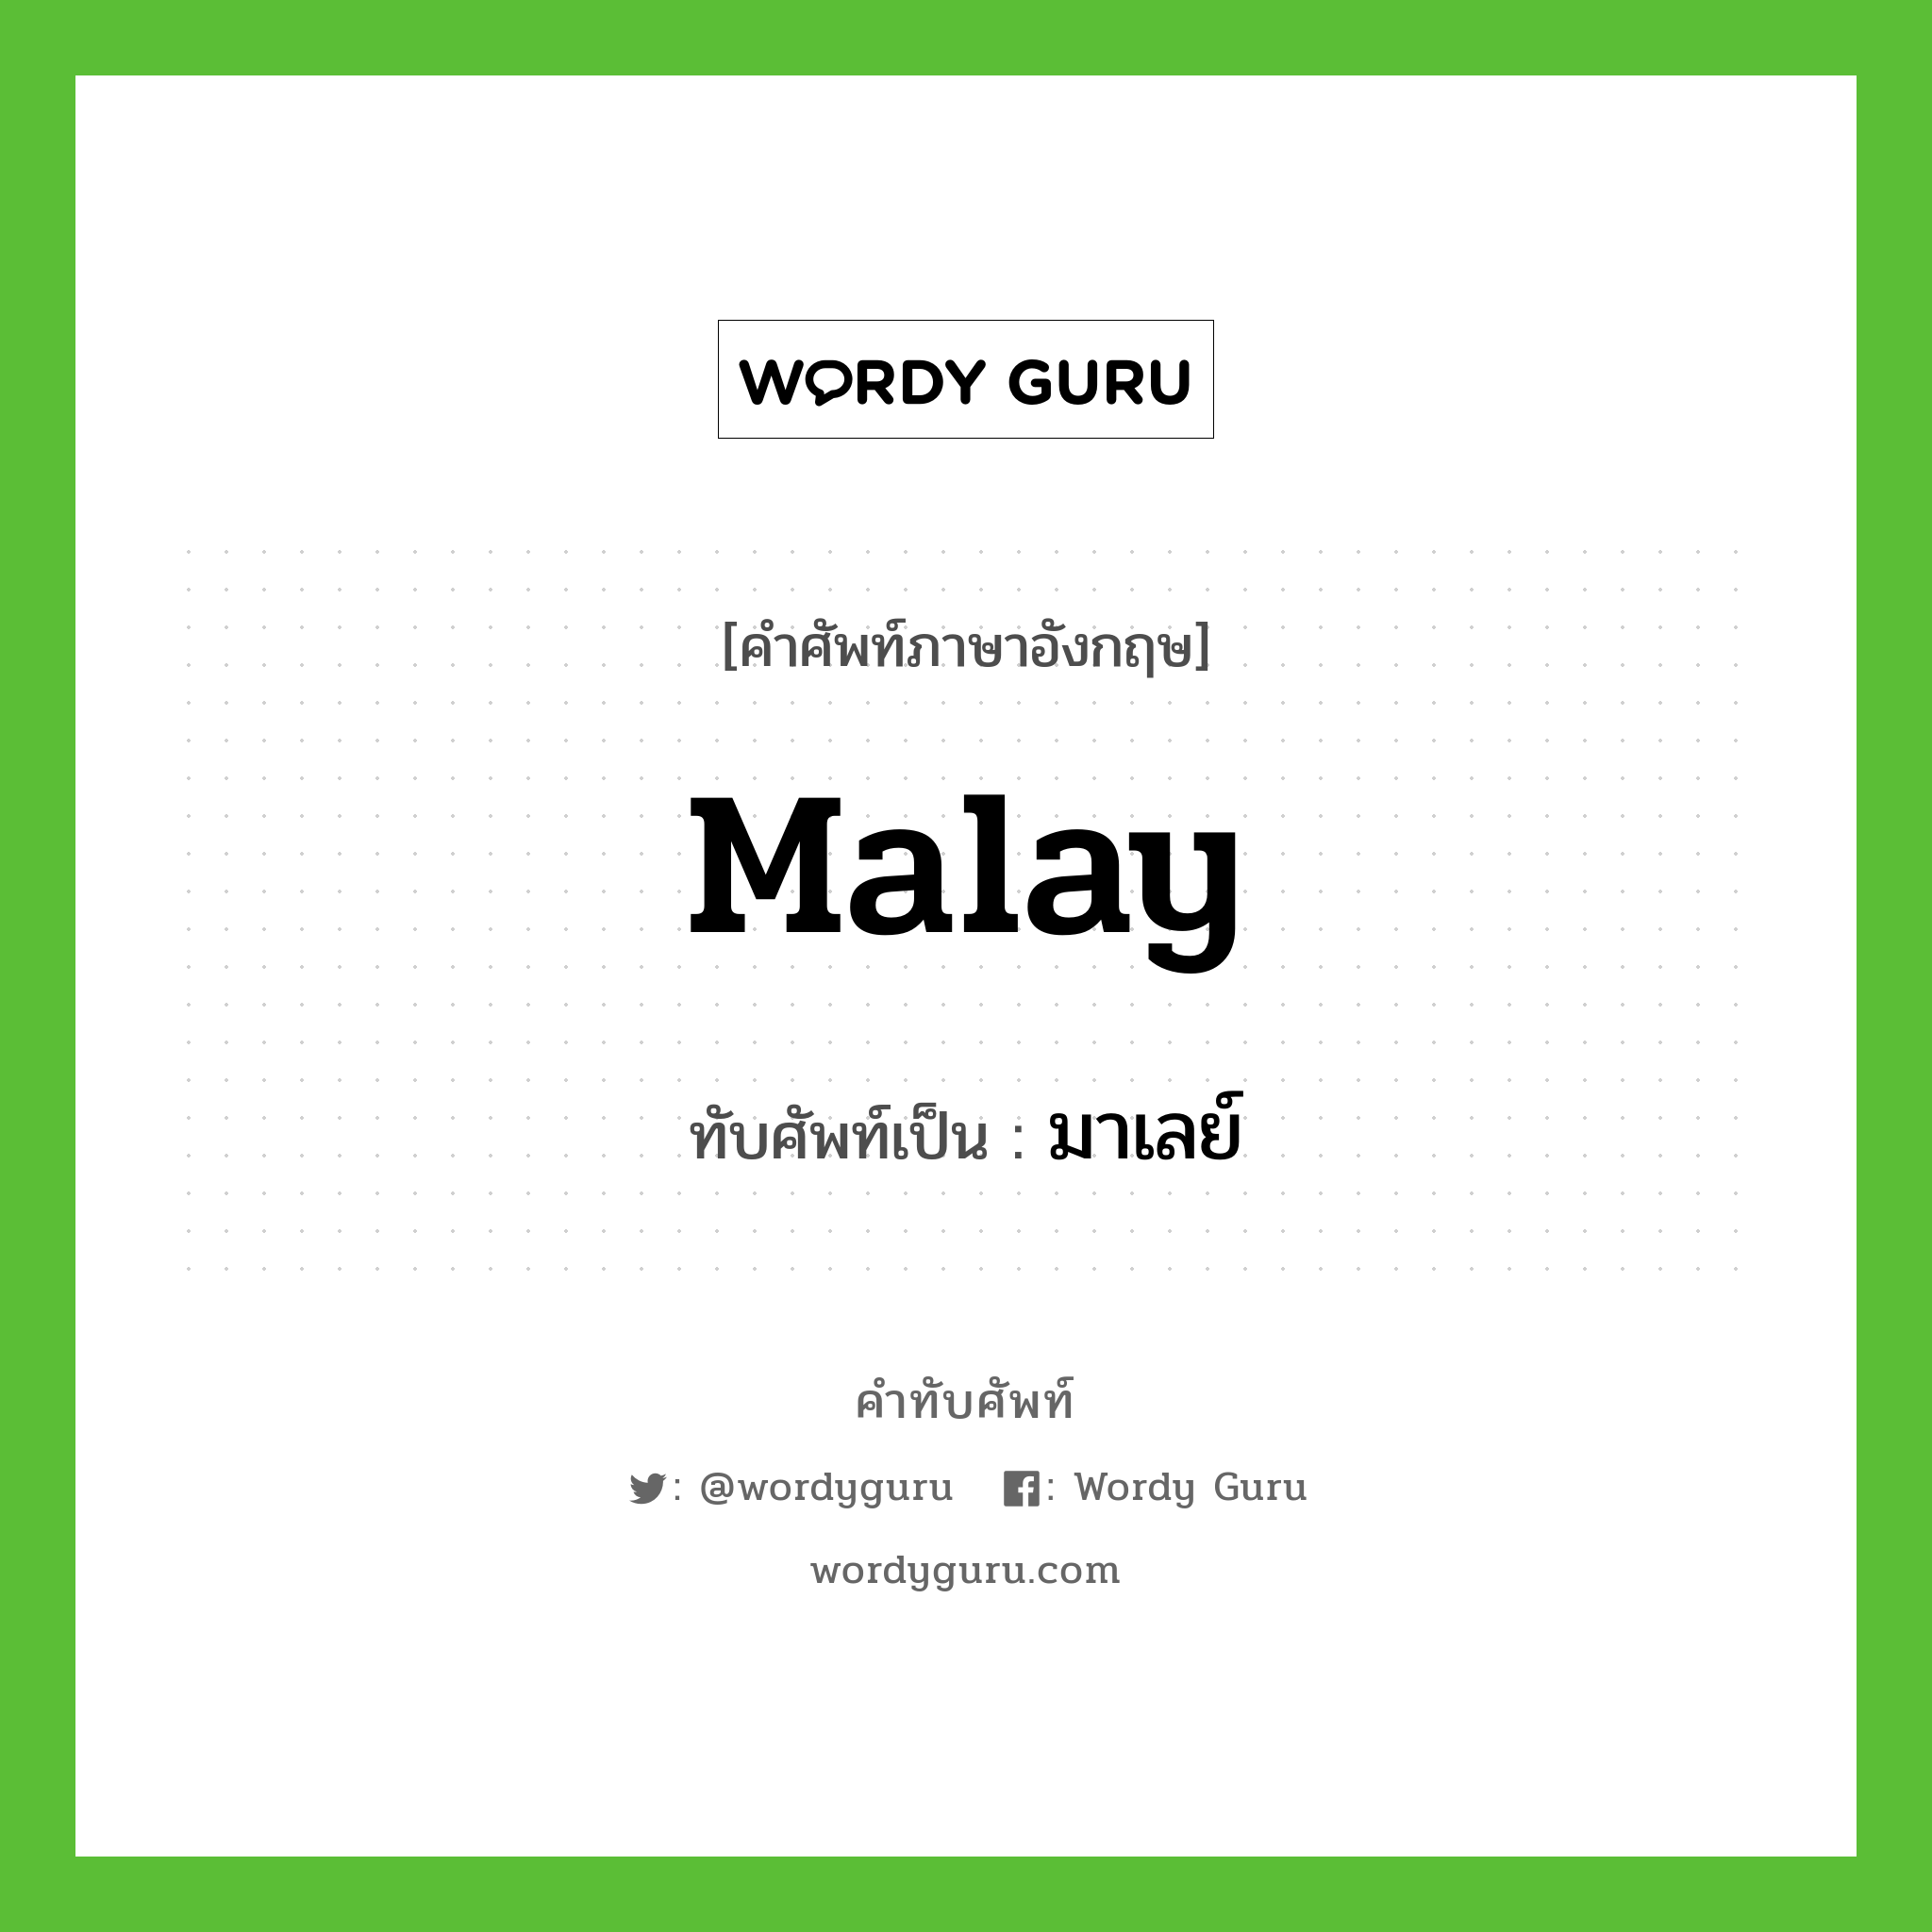 Malay เขียนเป็นคำไทยว่าอะไร?, คำศัพท์ภาษาอังกฤษ Malay ทับศัพท์เป็น มาเลย์